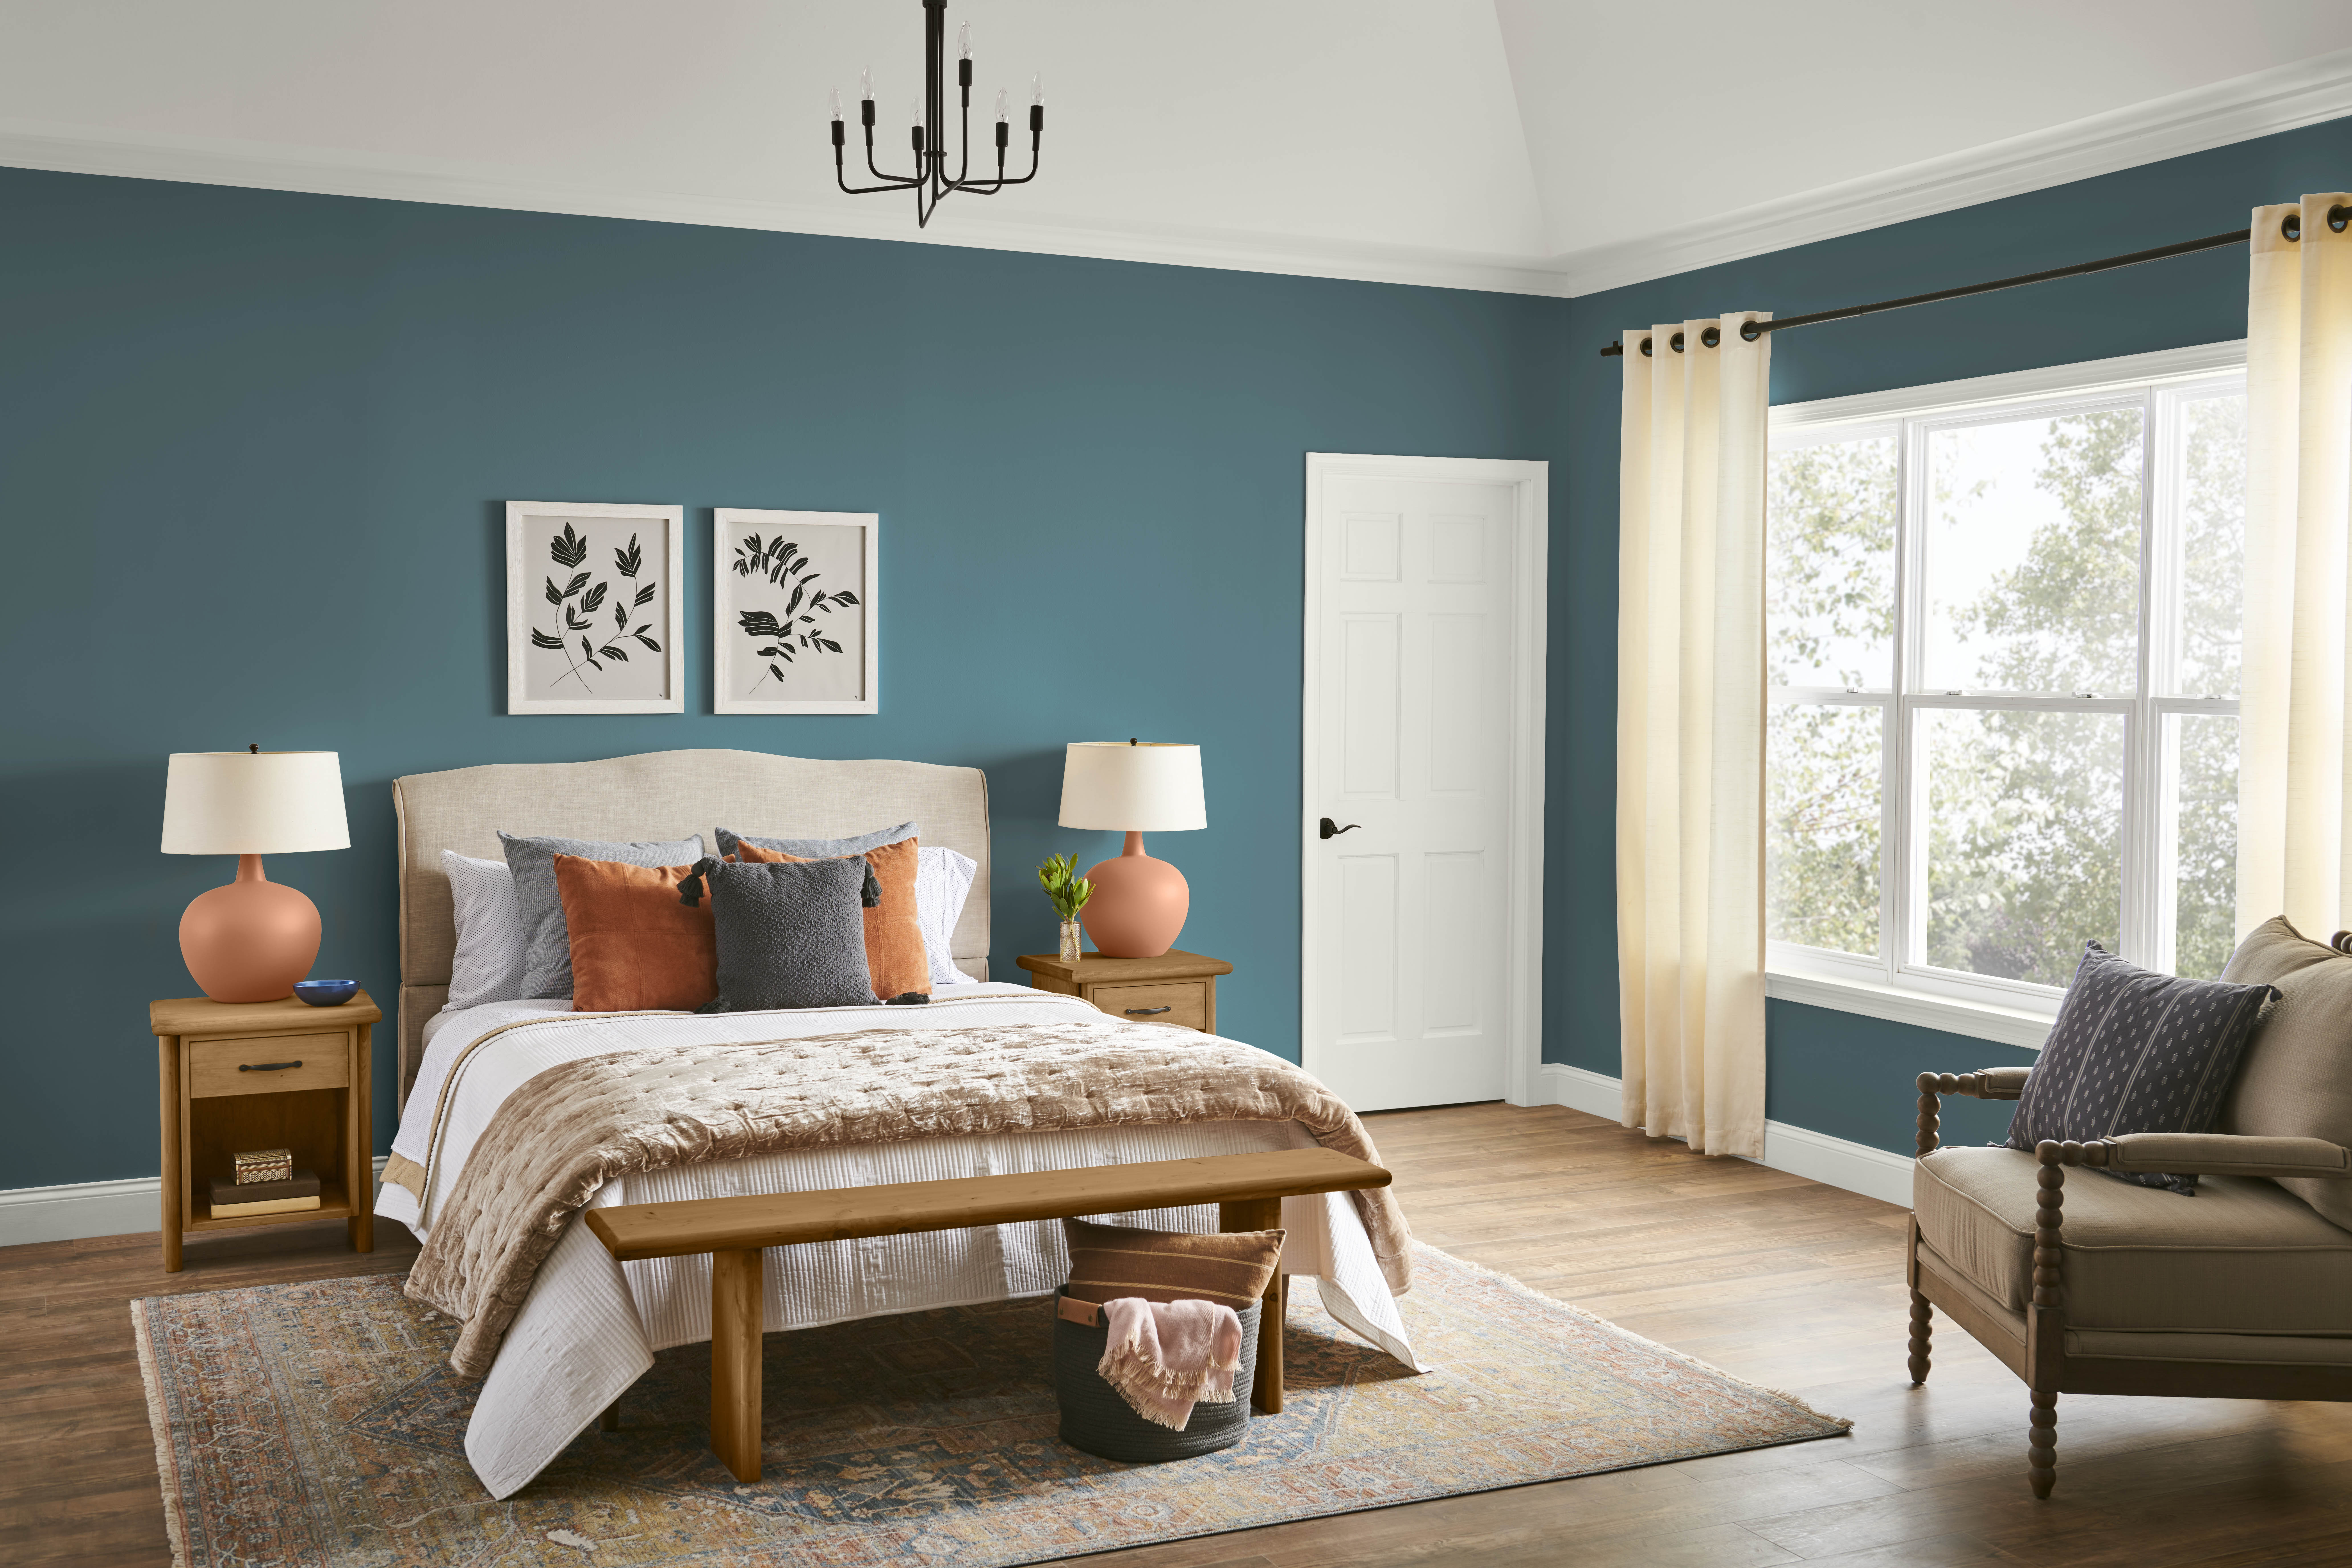 Une chambre à coucher avec des murs dans la couleur Sarcelle sophistiquée, stylisée avec des meubles et accents aux teintes neutres et de terre cuite